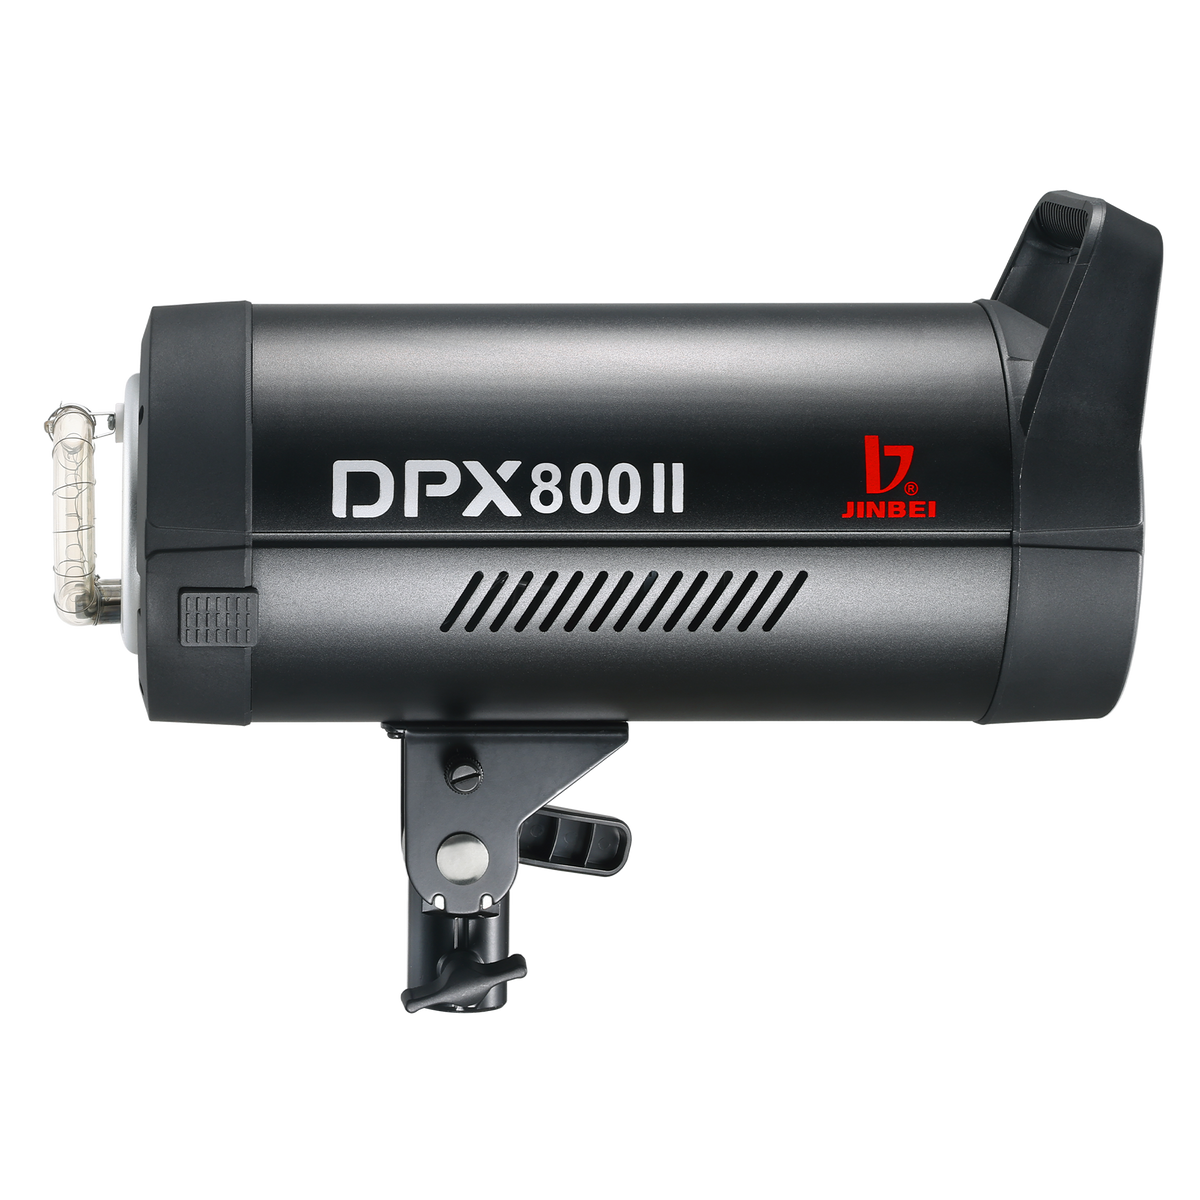 DPXII 800 studio flash